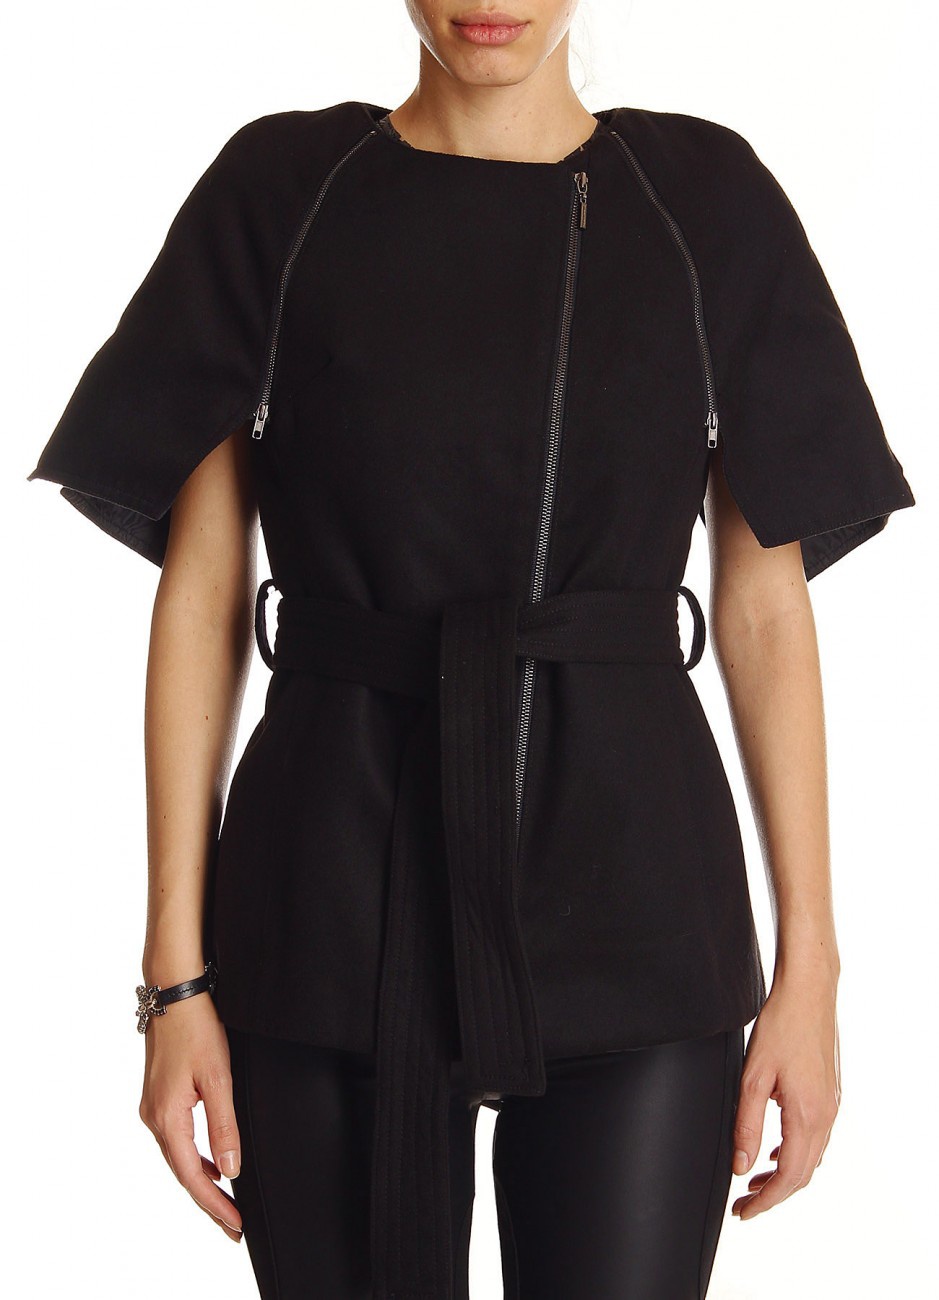 Пальто итальянского бренда FORNARINA черного цвета, размер М